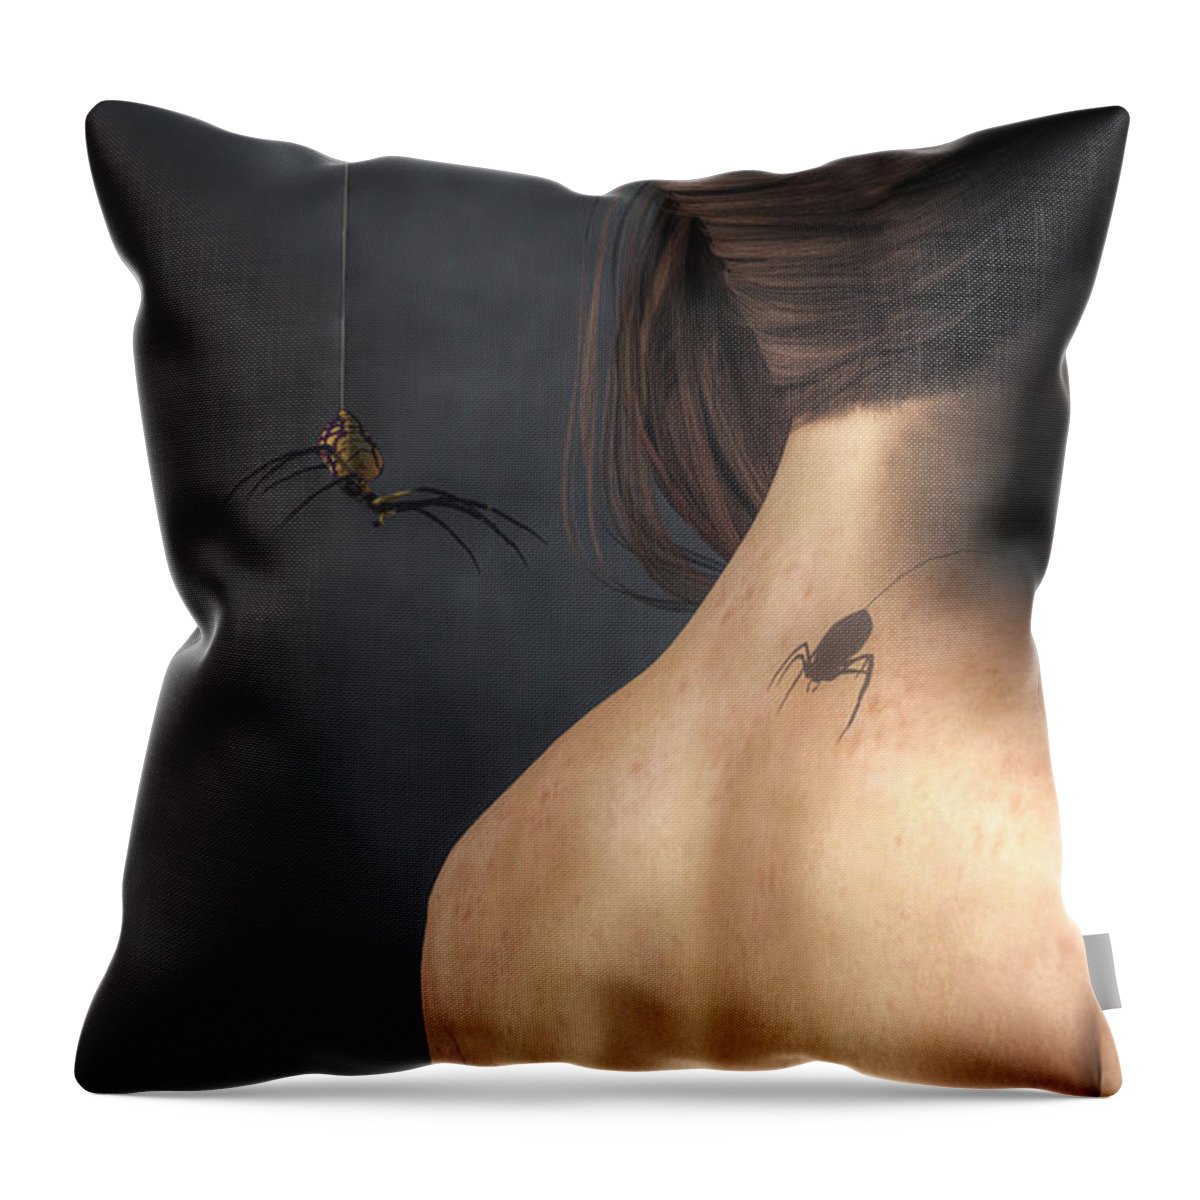 Vampire Spider Throw Pillow featuring the digital art Vampire Spider by Daniel Eskridge